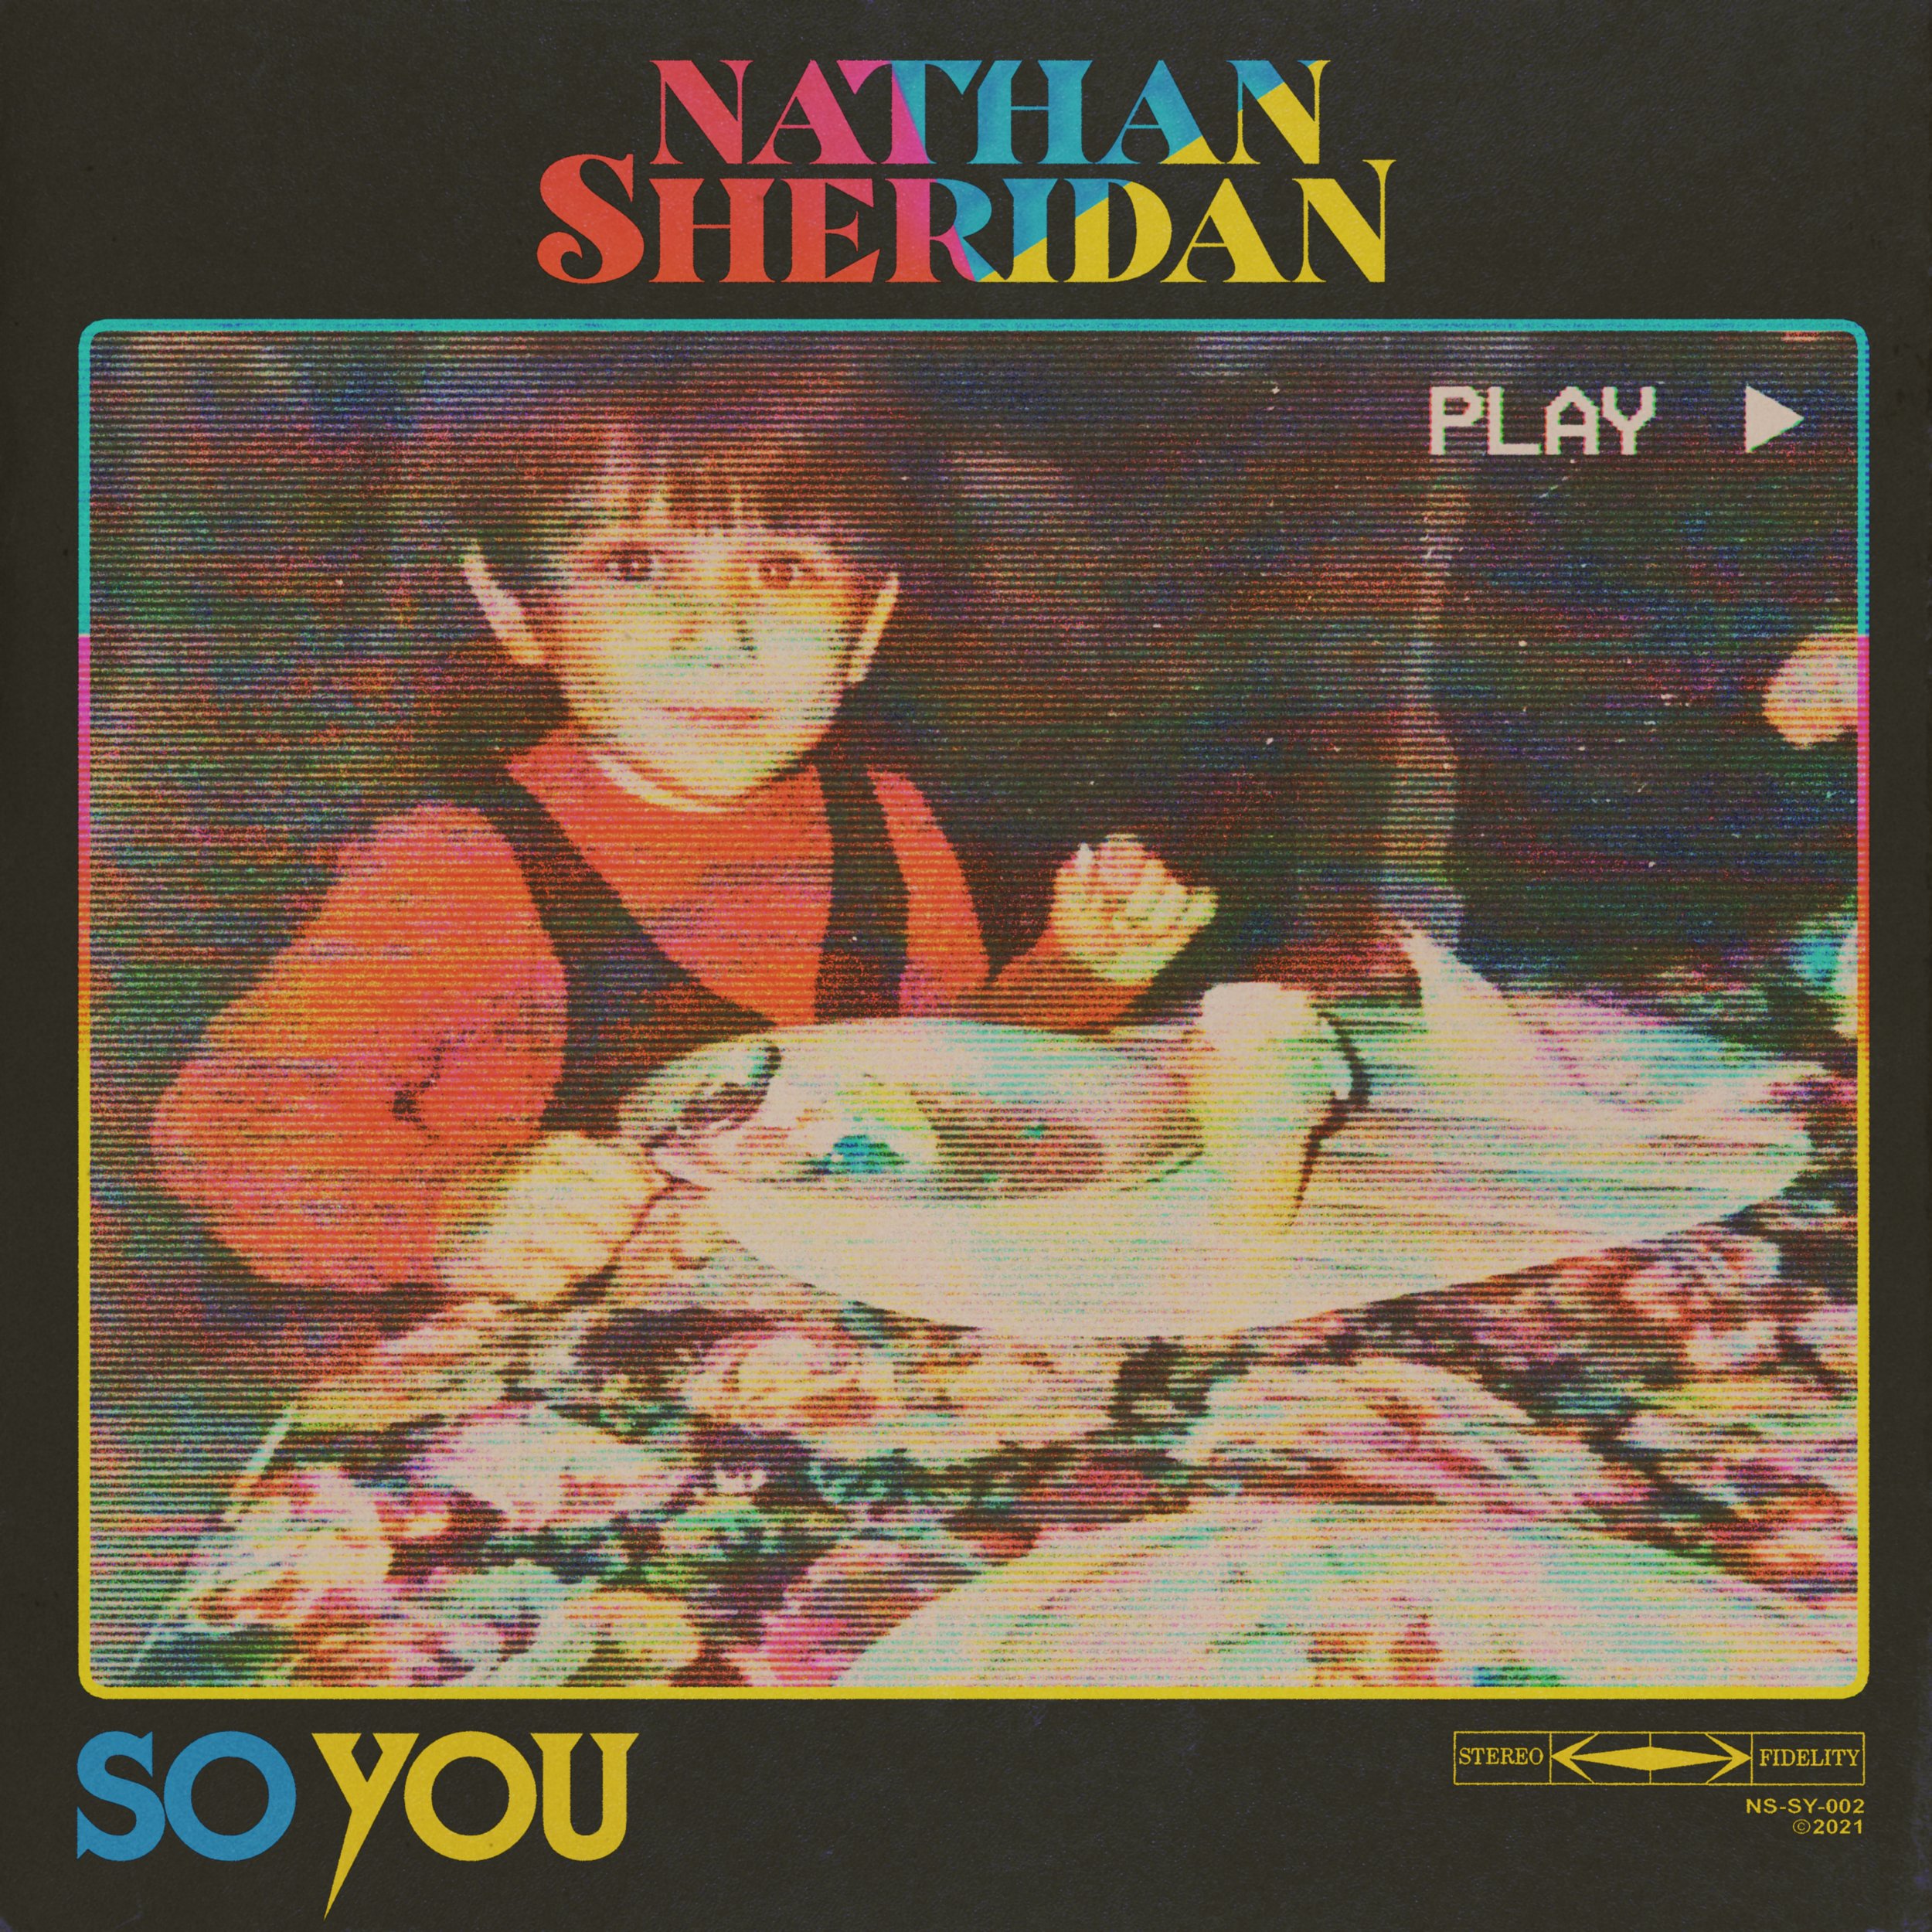 So You - Nathan Sheridan